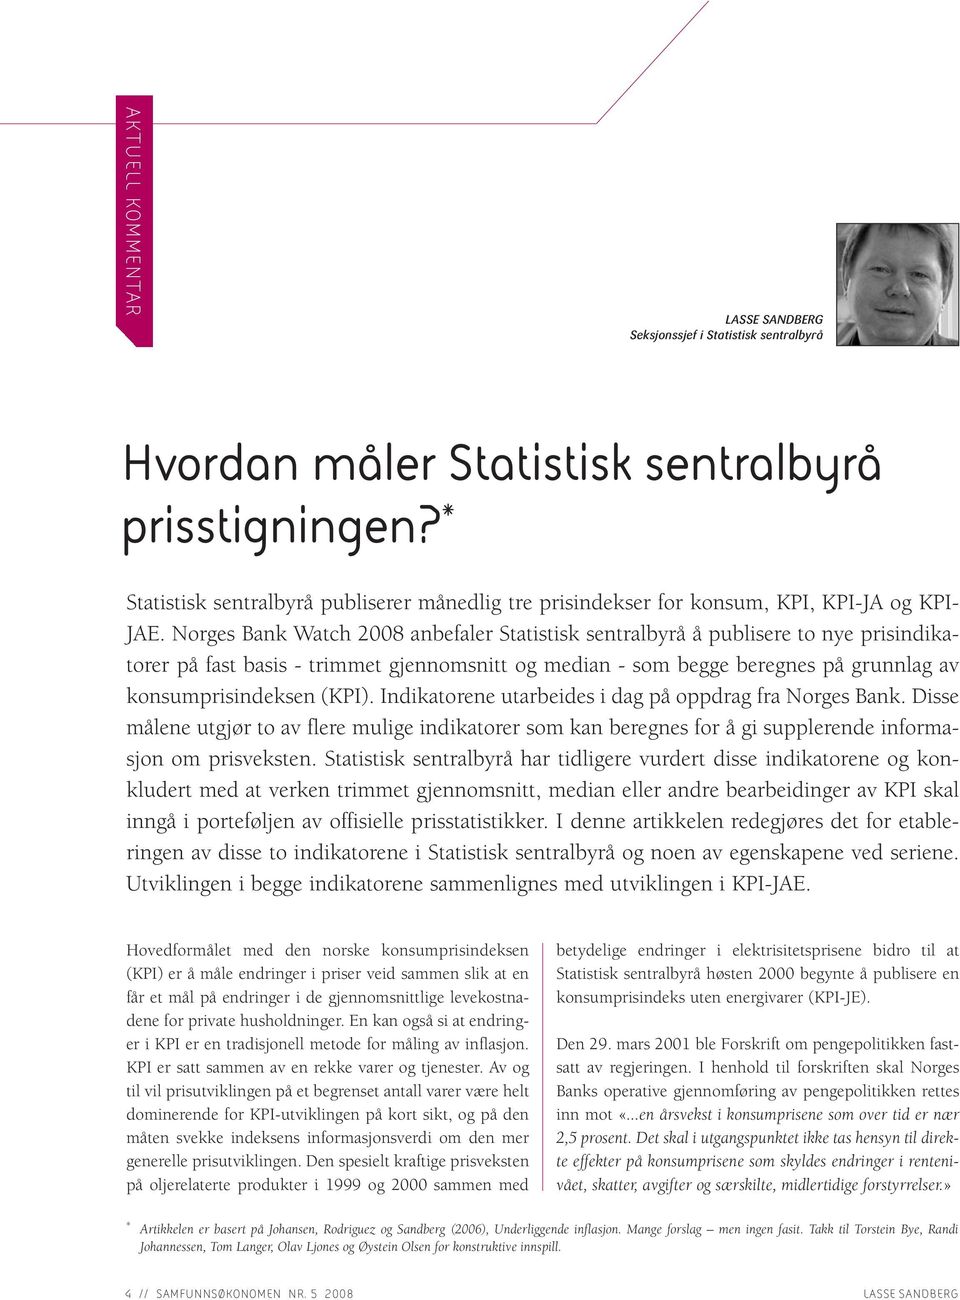 Norges Bank Watch 2008 anbefaler Statistisk sentralbyrå å publisere to nye prisindikatorer på fast basis - trimmet gjennomsnitt og median - som begge beregnes på grunnlag av konsumprisindeksen (KPI).